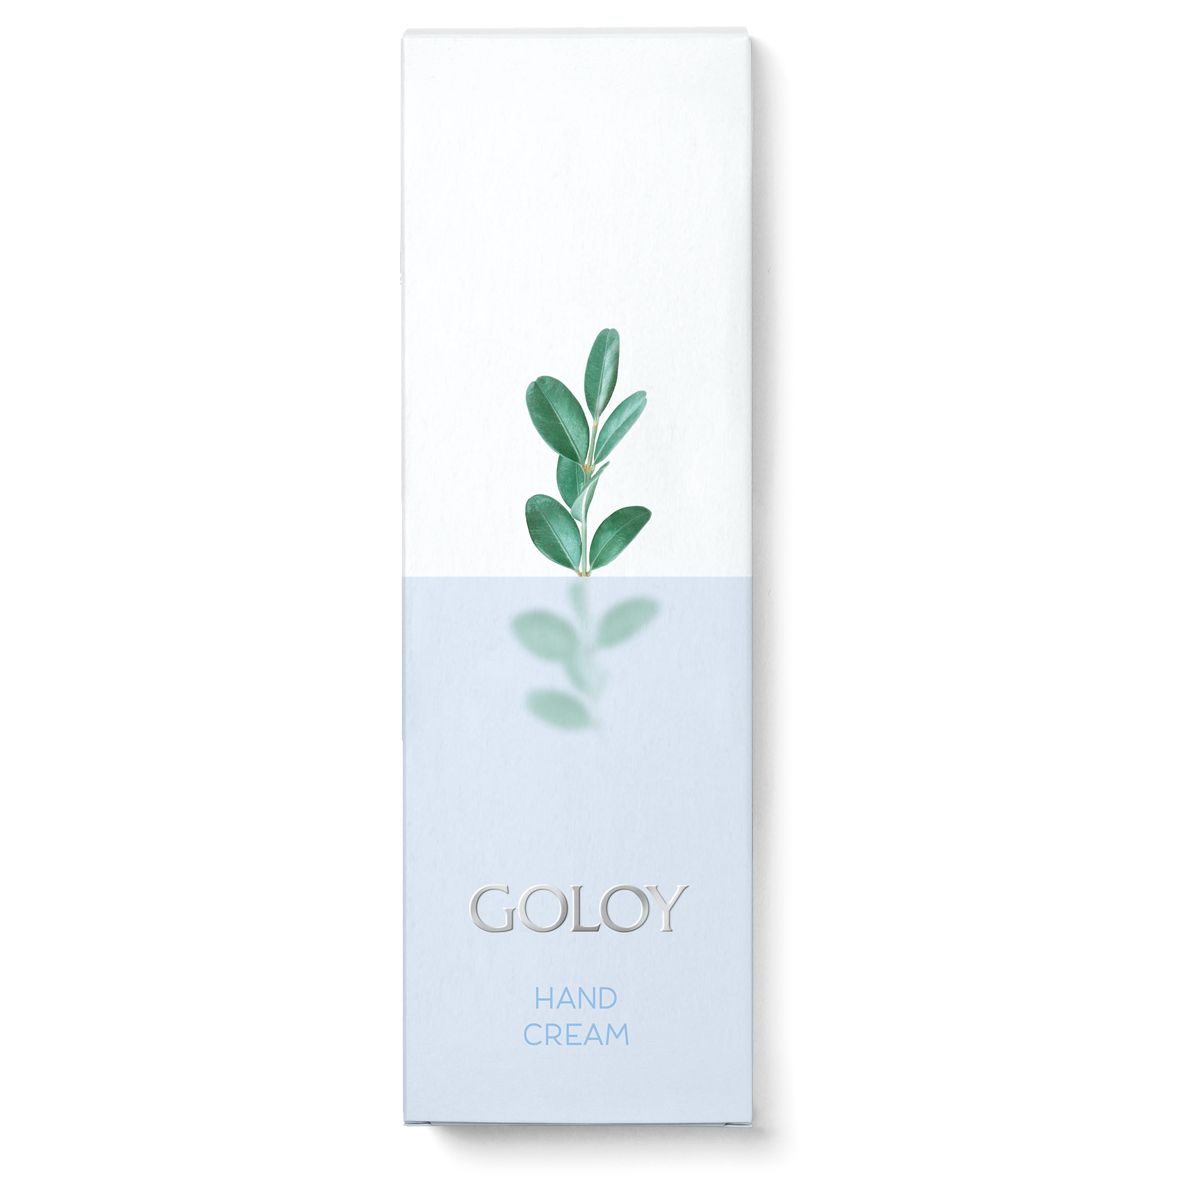 Goloy Hand Cream - die milde Pflege verwöhnt Ihre Hände nachhaltig für eine intakte Hautbarriere.